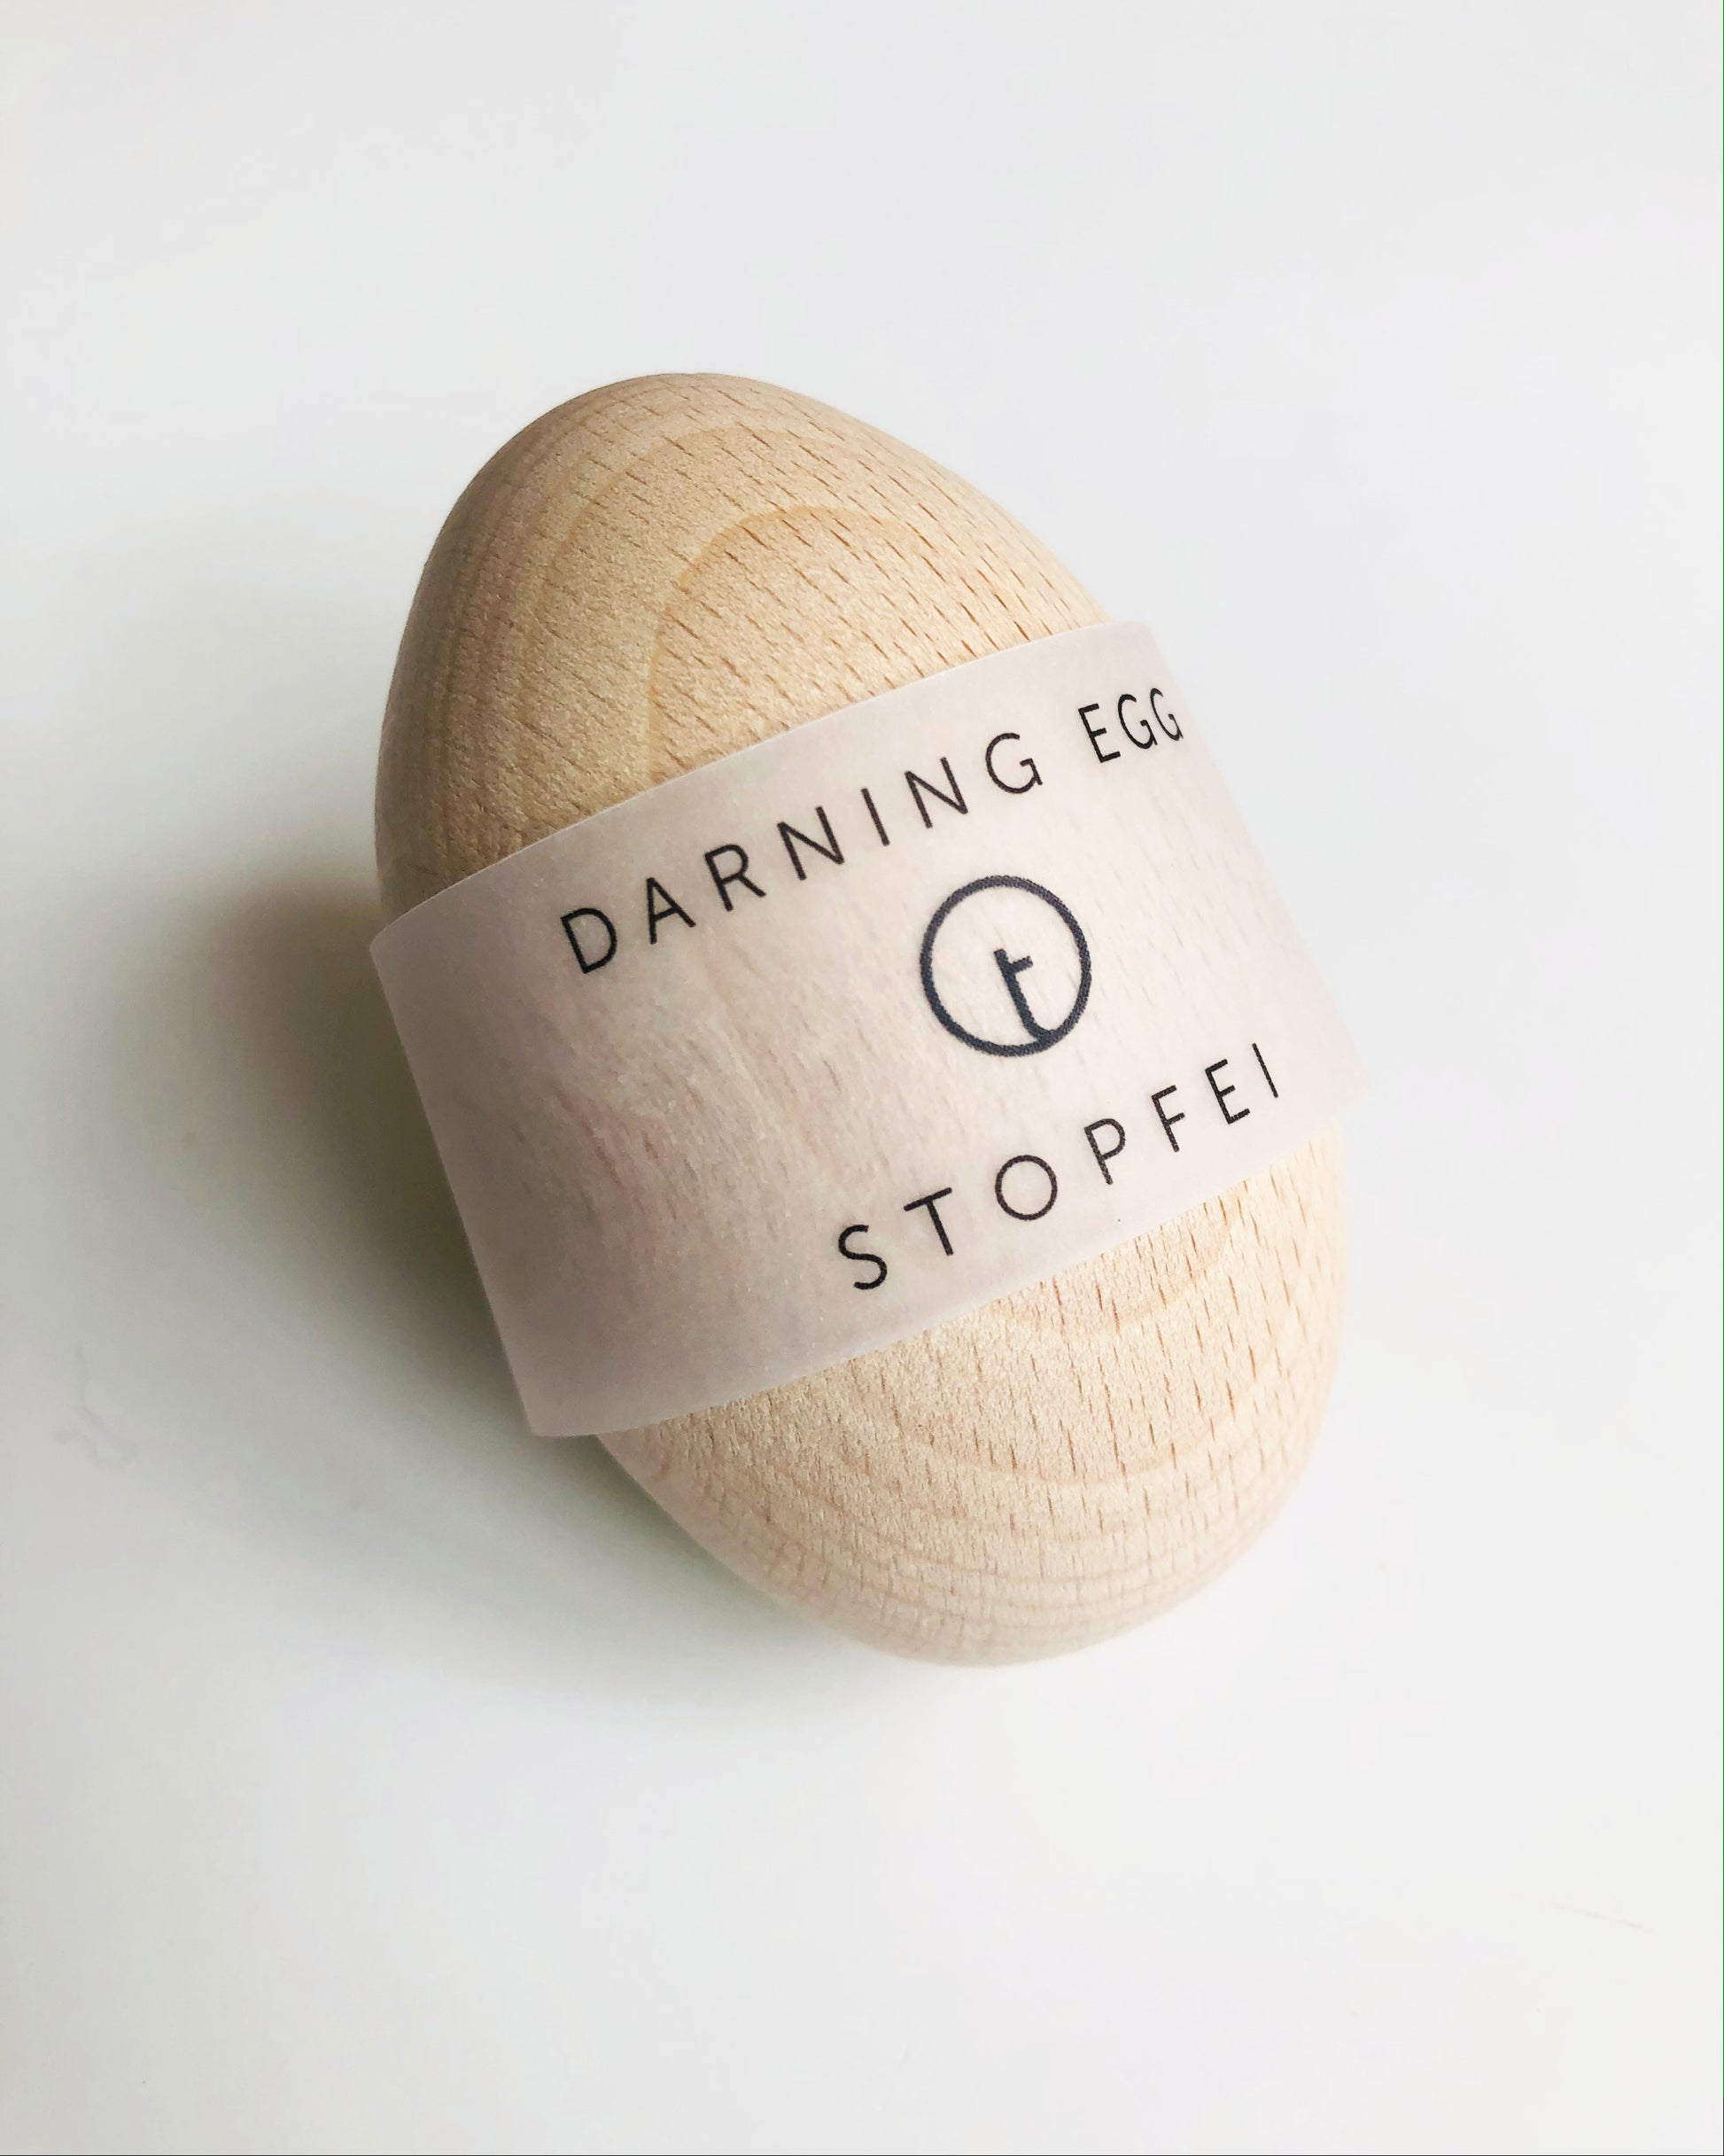 Darning Egg – toolly